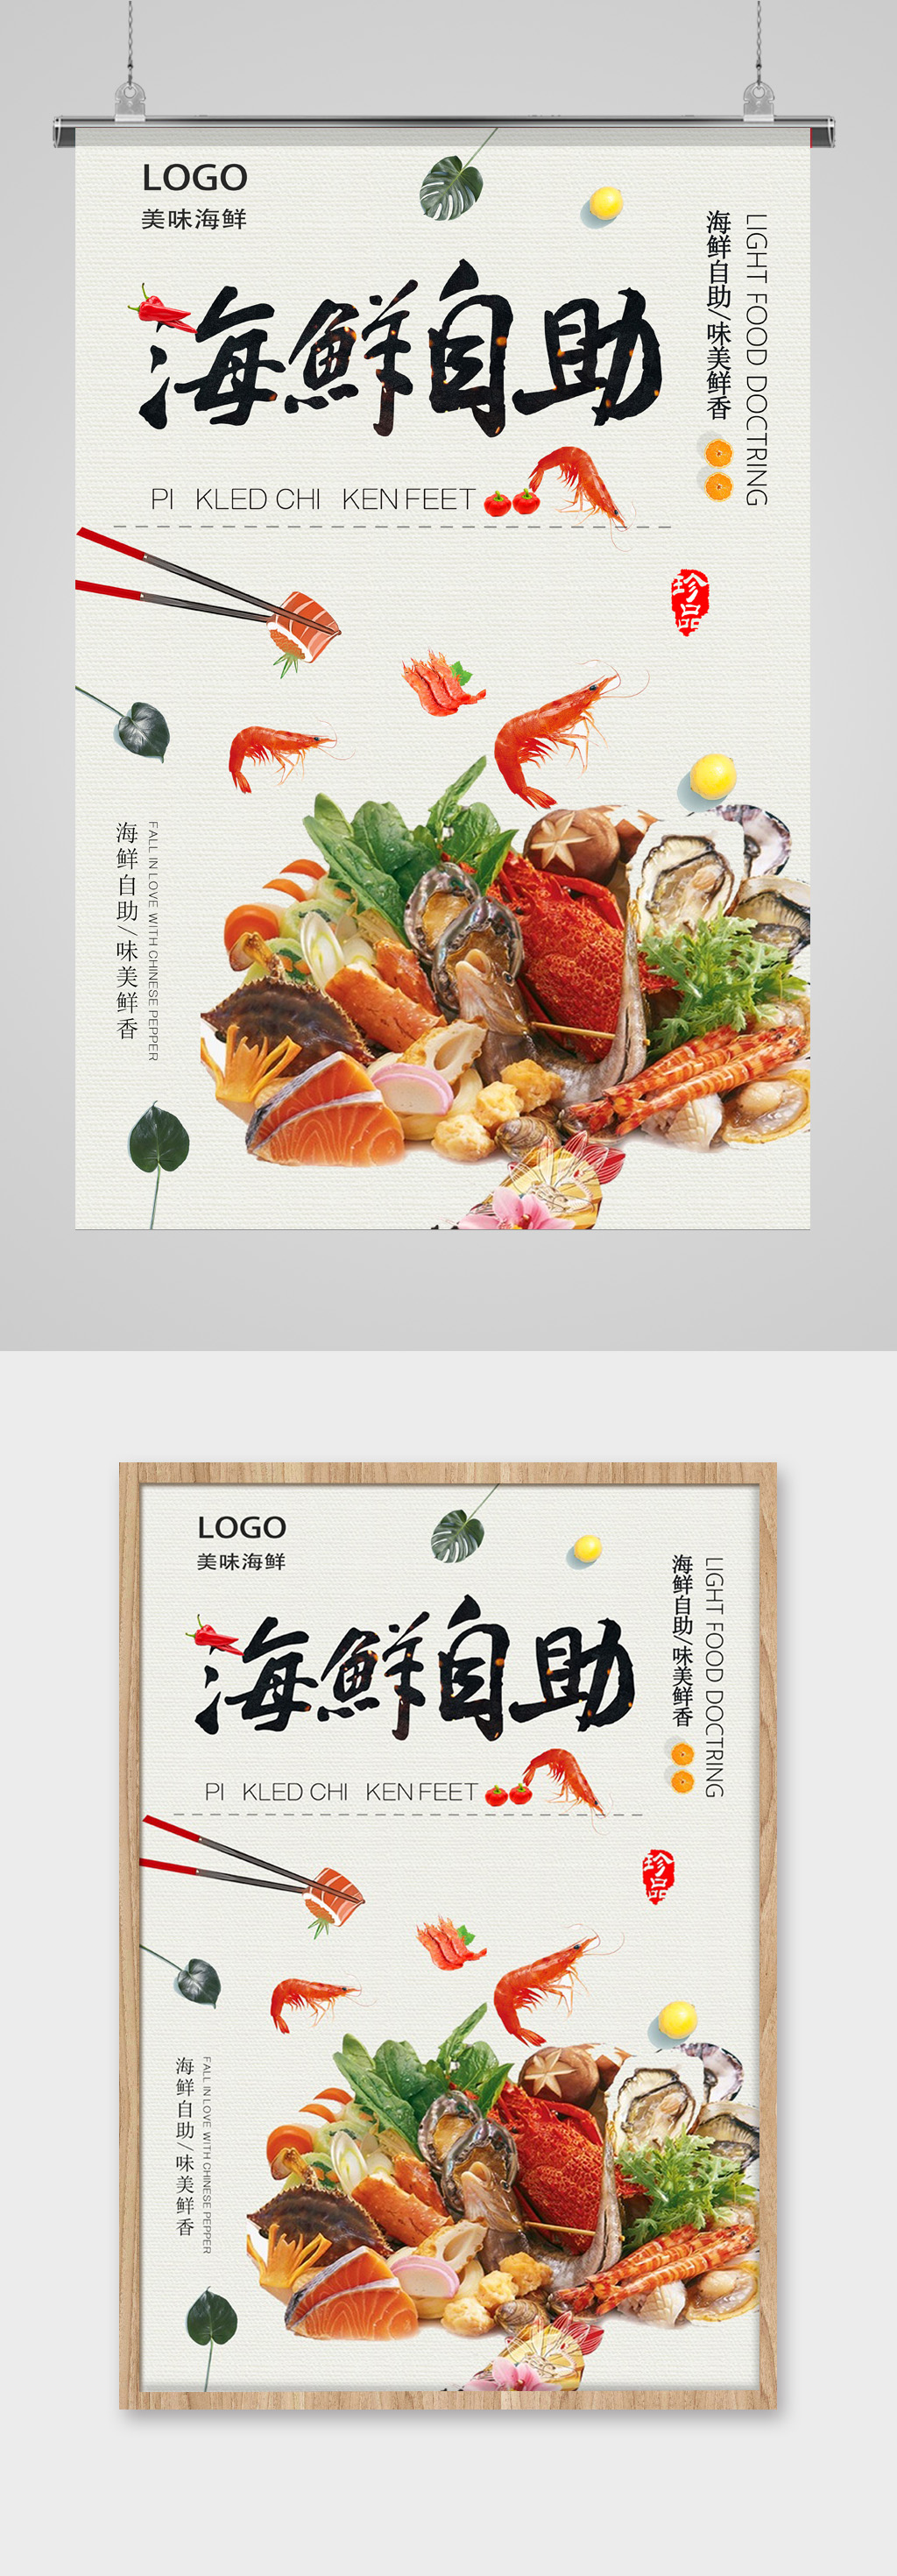 中国风海鲜自助餐海报